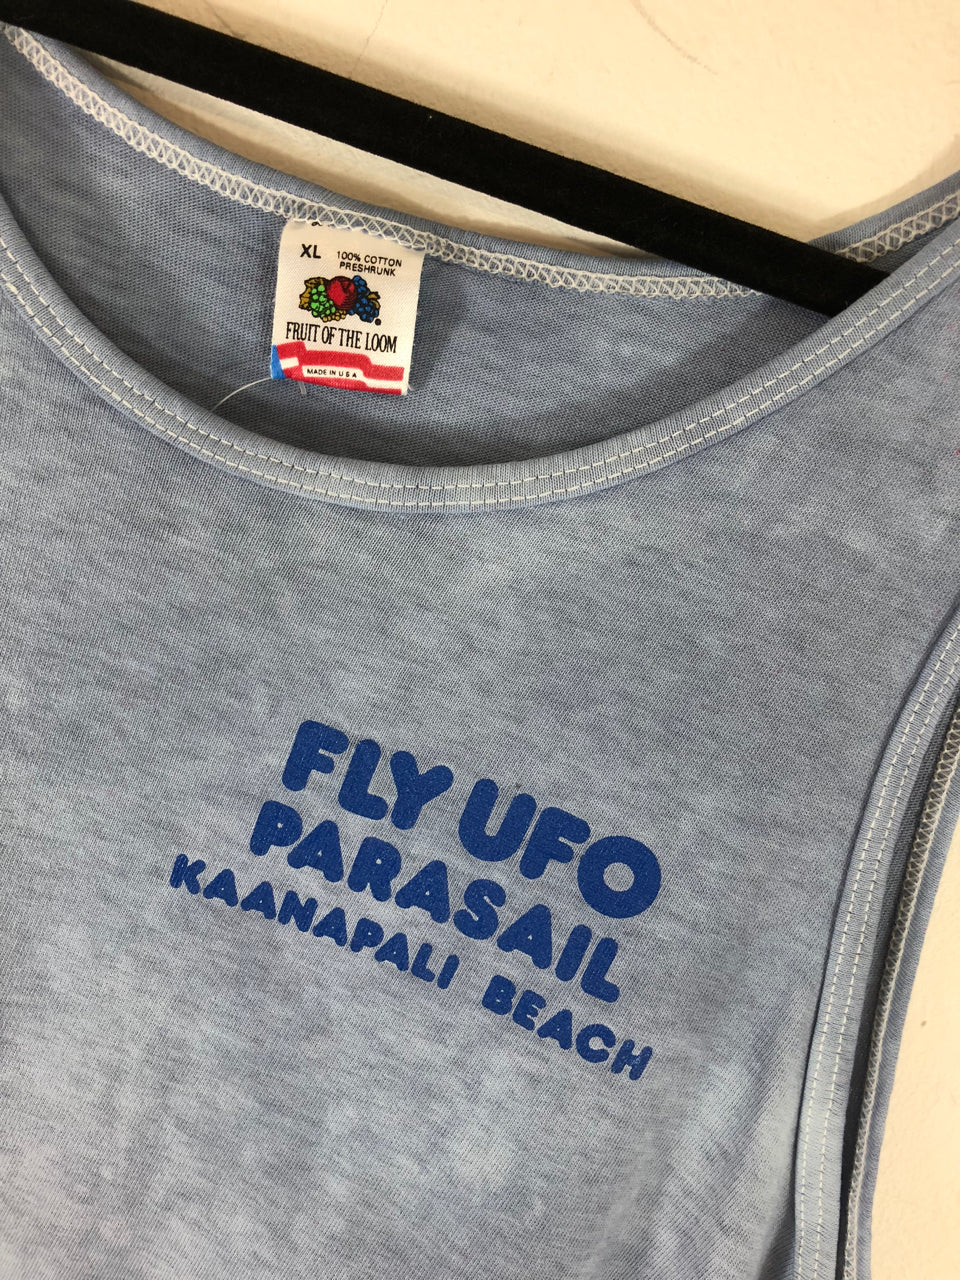 Fly UFO Kaanapali Beach, Maui Tank Top